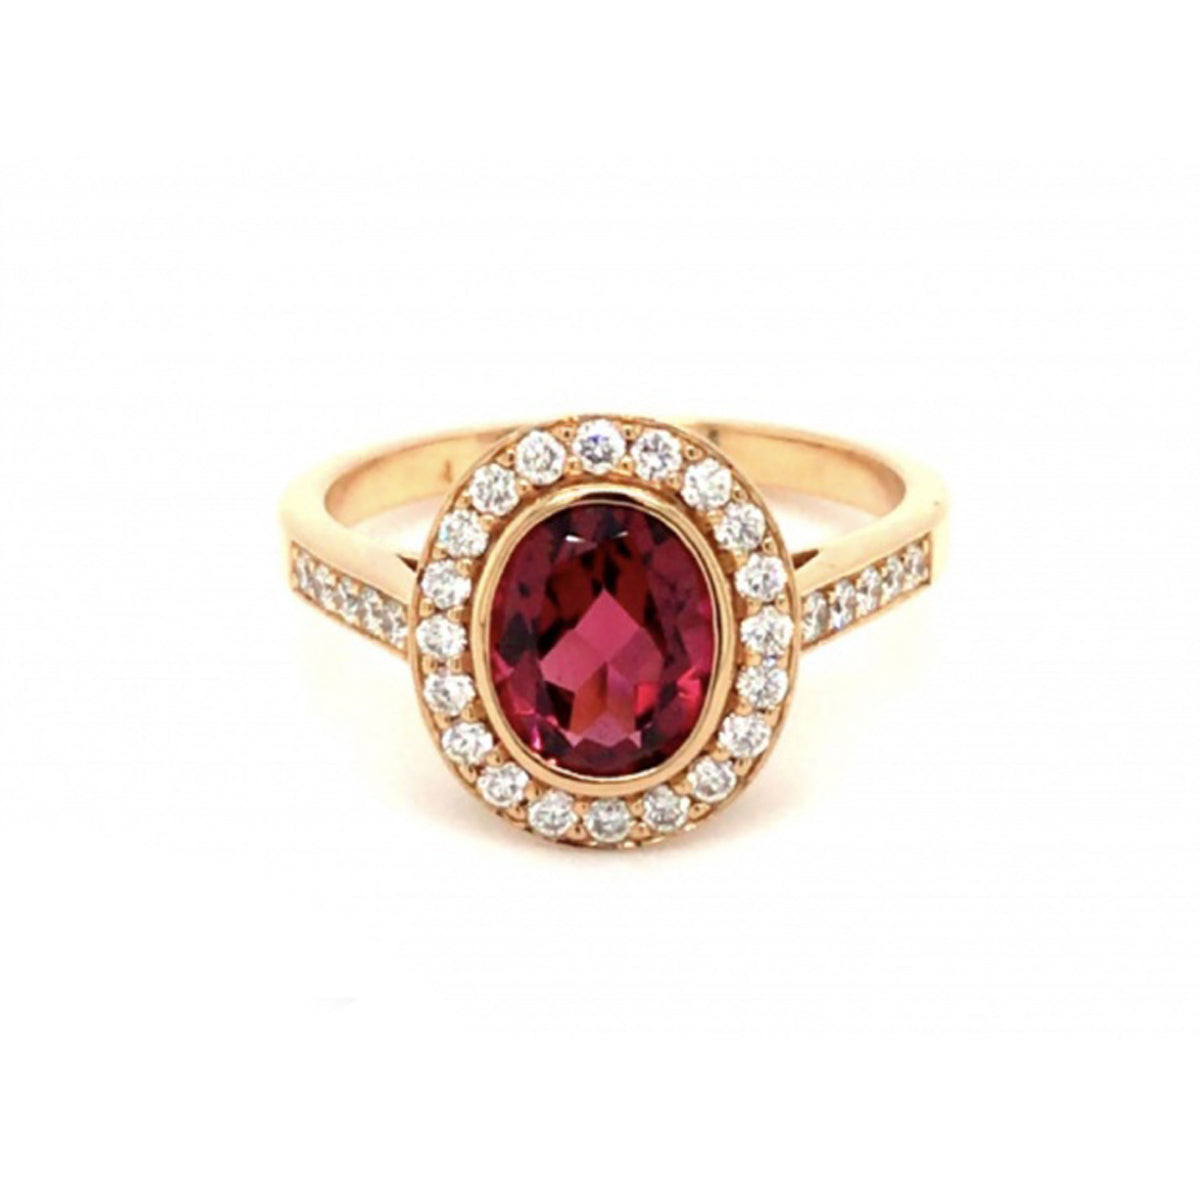 18ct Rose Gold Pink Tourmaline & Diamond Ring - Size M